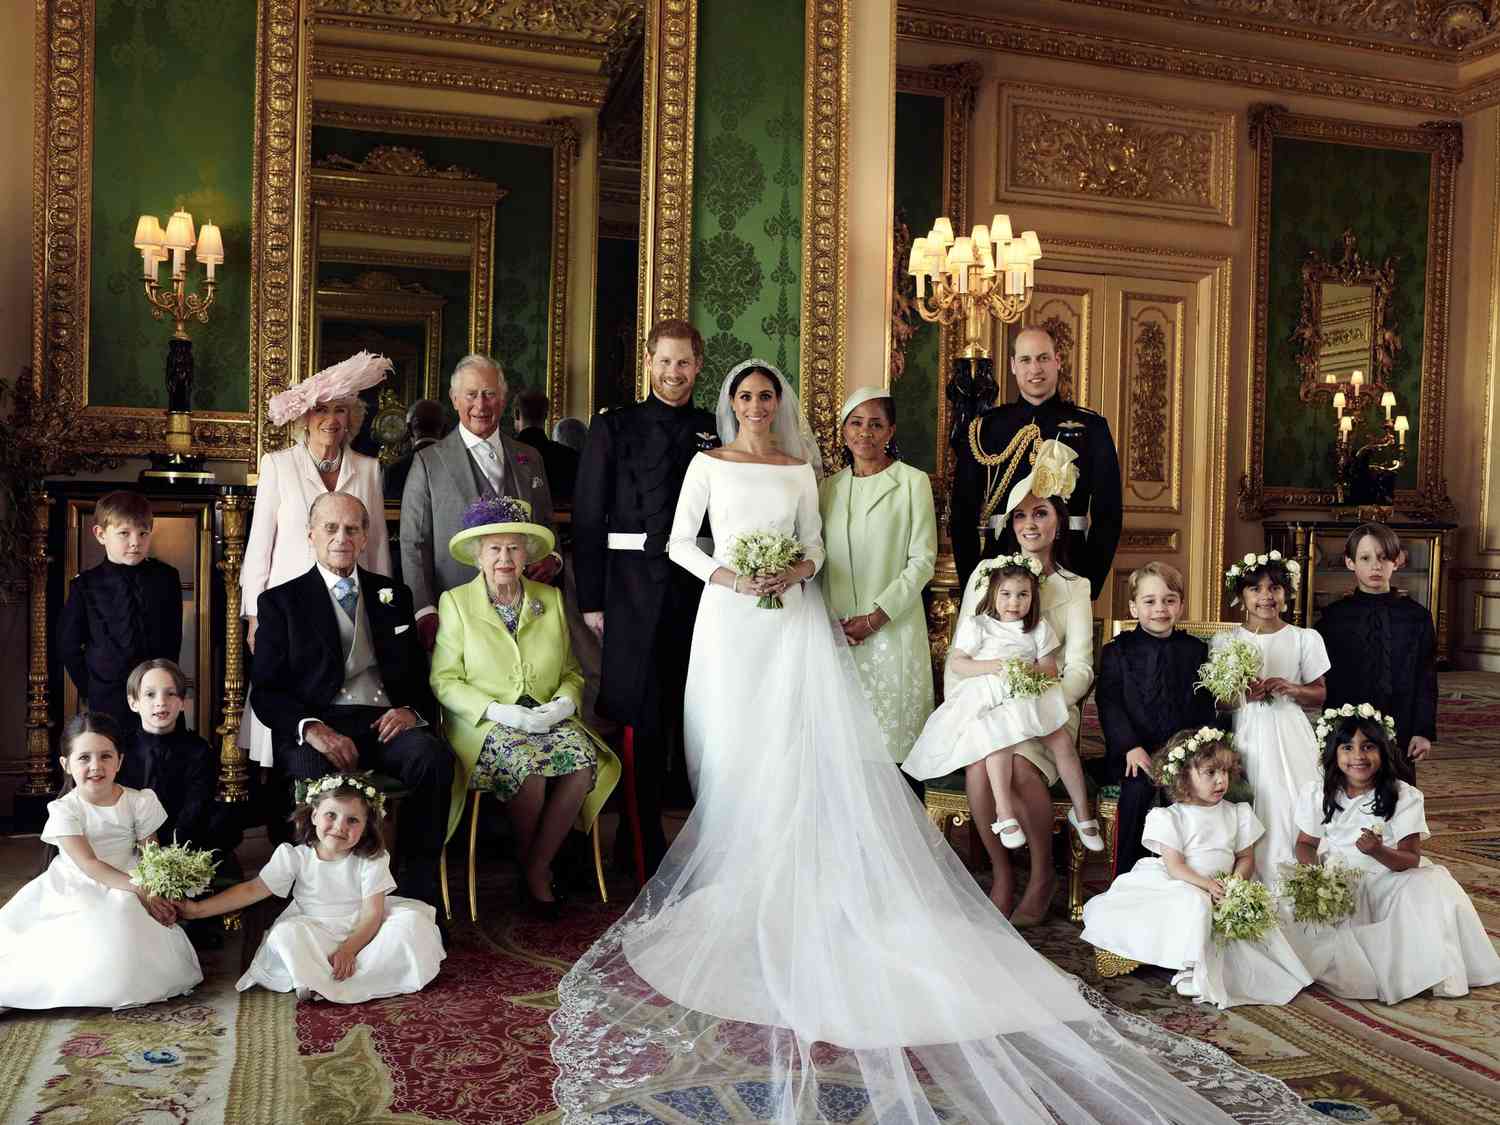 Картинки по запросу "official photos of royal wedding"